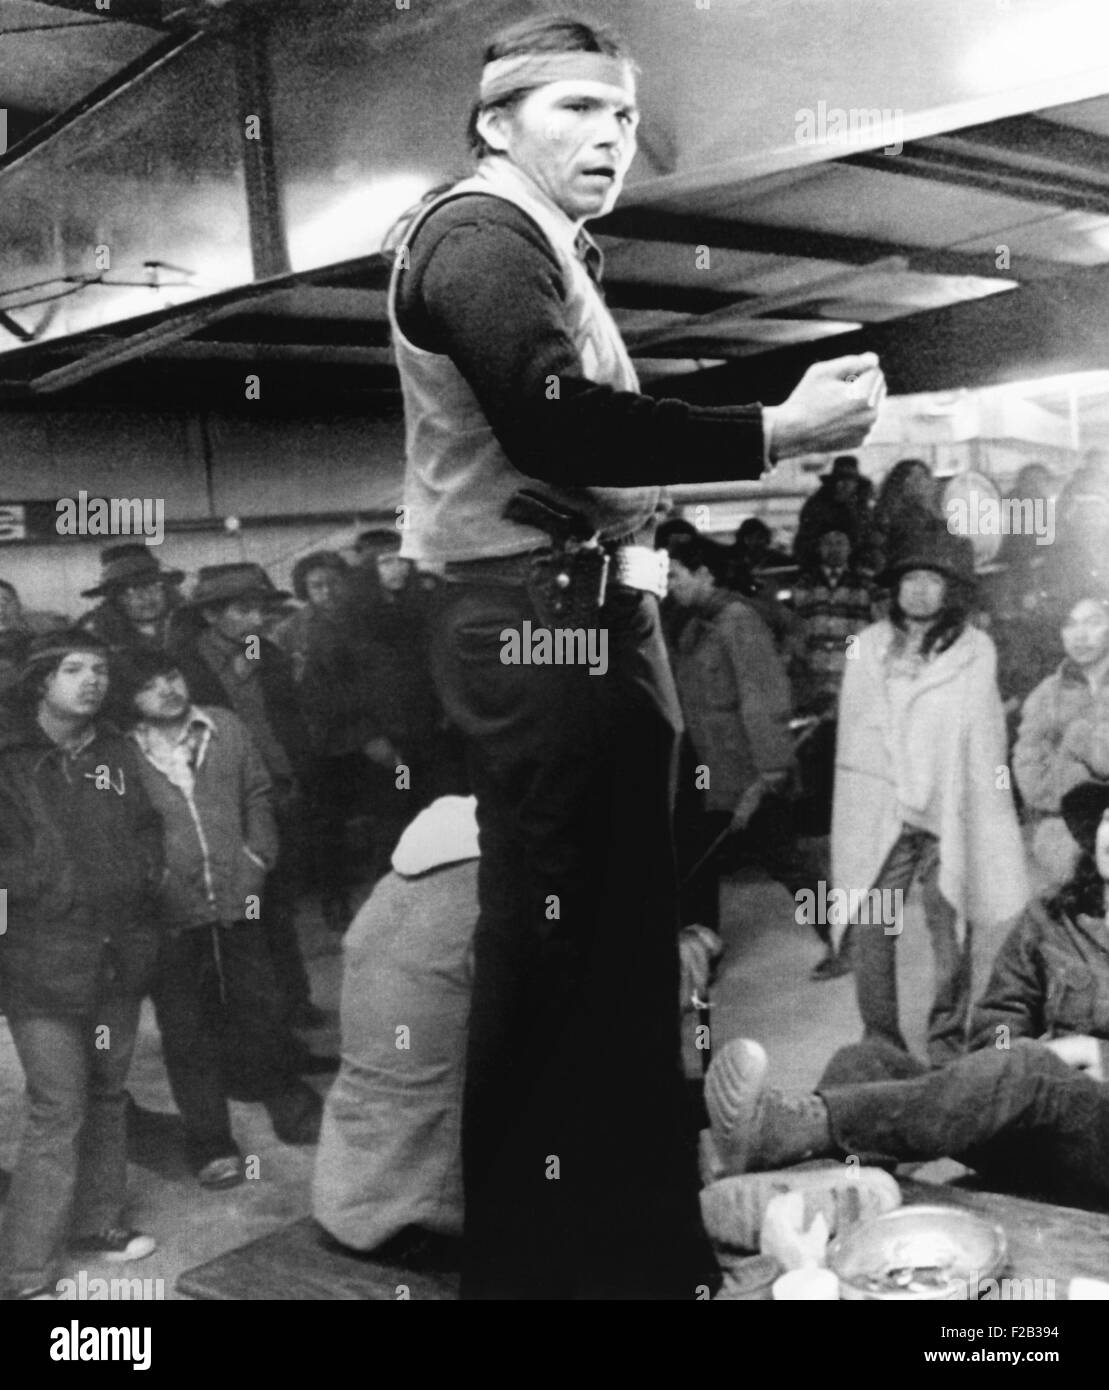 Dennis Banks, spricht zu den Indianern während der Besetzung von Wounded Knee 1973. Etwa 200 Indianer protestierten die Stammes-Präsidentschaft von Richard Wilson. 9. März 1973. Am 29. Dezember 1890, die USA 7. Kavallerie tötete 200 Männer, Frauen und Kinder der Lakota am Wounded Knee. -(CSU 2015 6 241) Stockfoto